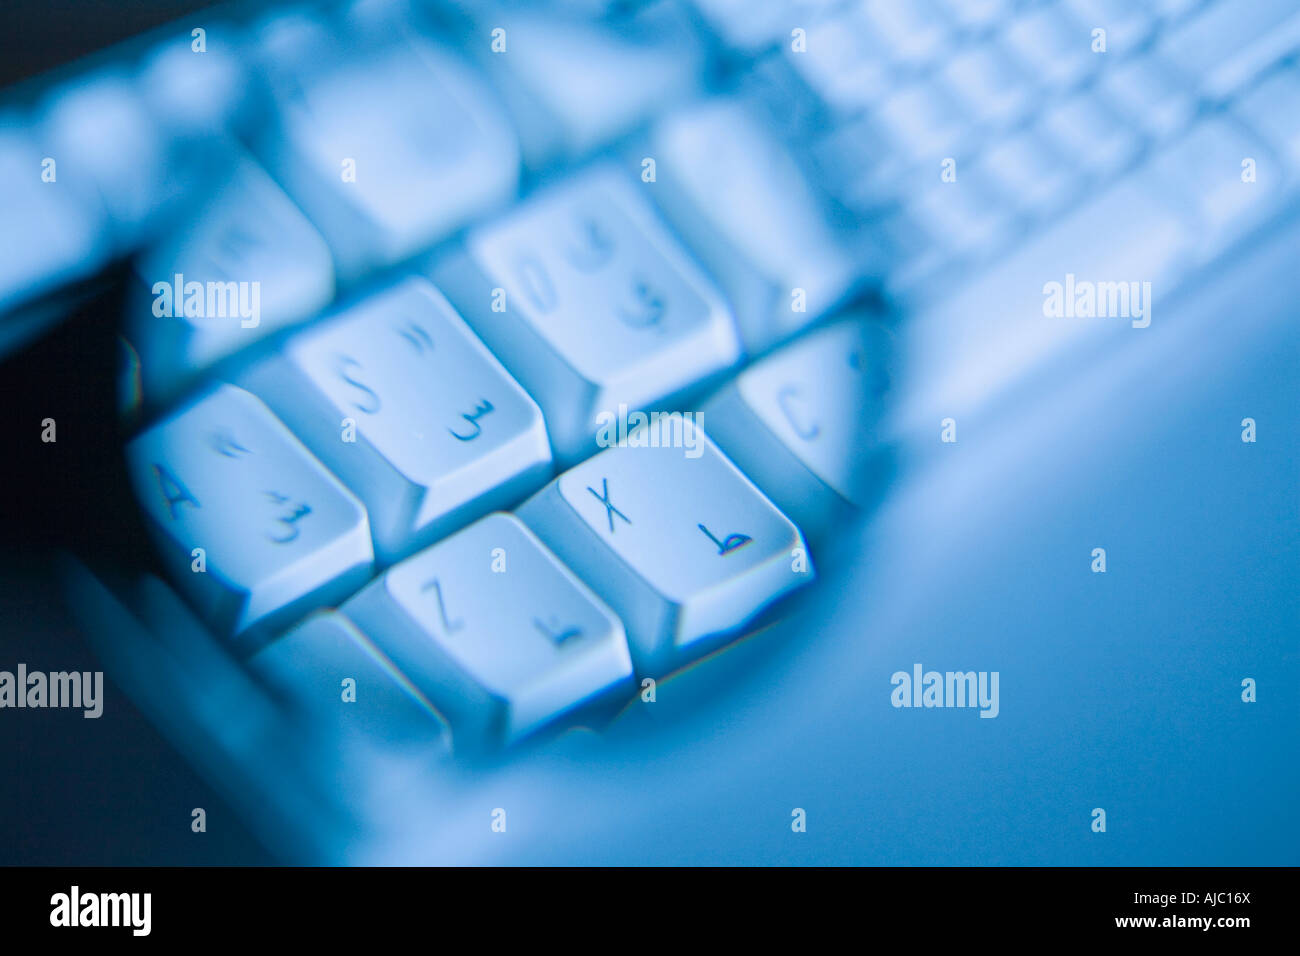 Arabic Keyboard Stockfotos Und Bilder Kaufen Alamy